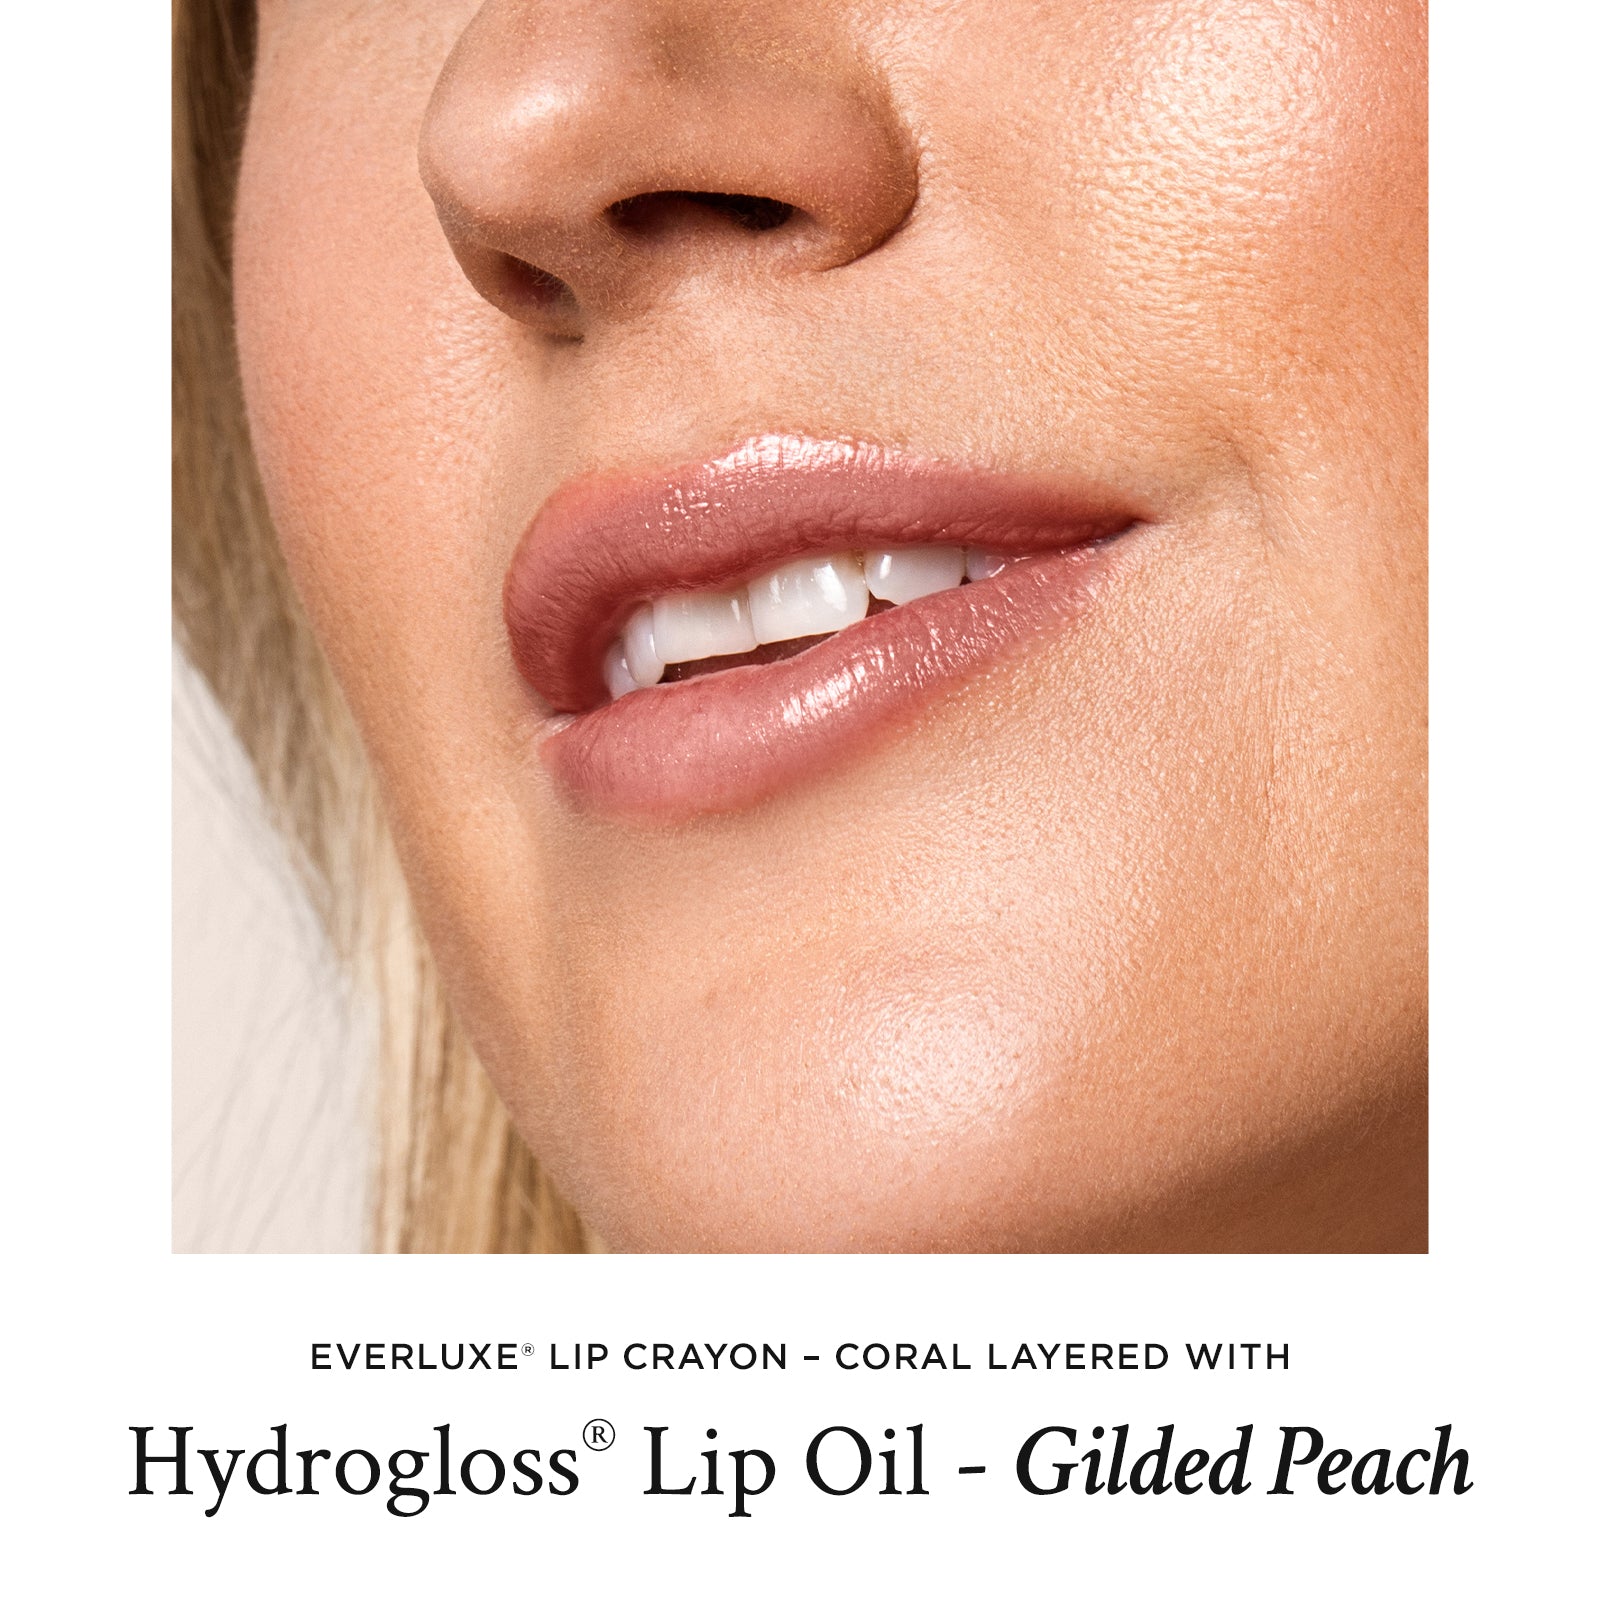 Hydrogloss® Lip Oil